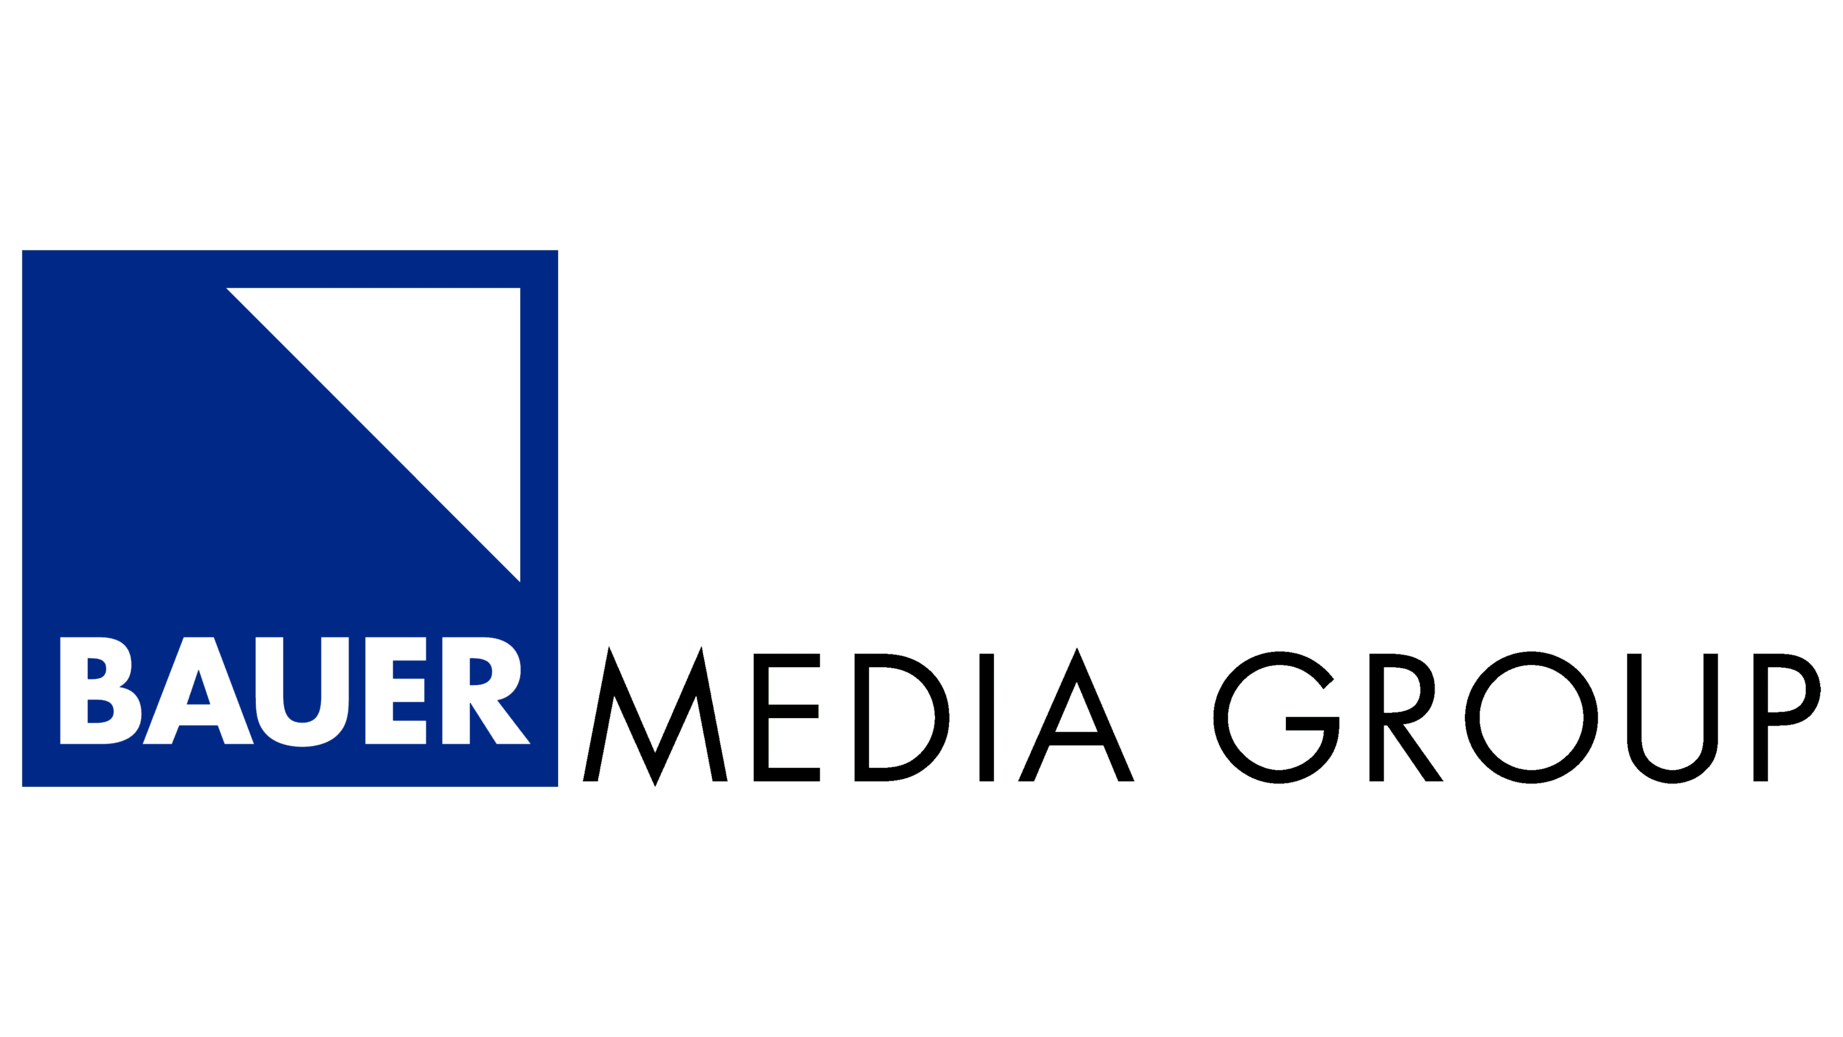 Bauer media group symbol